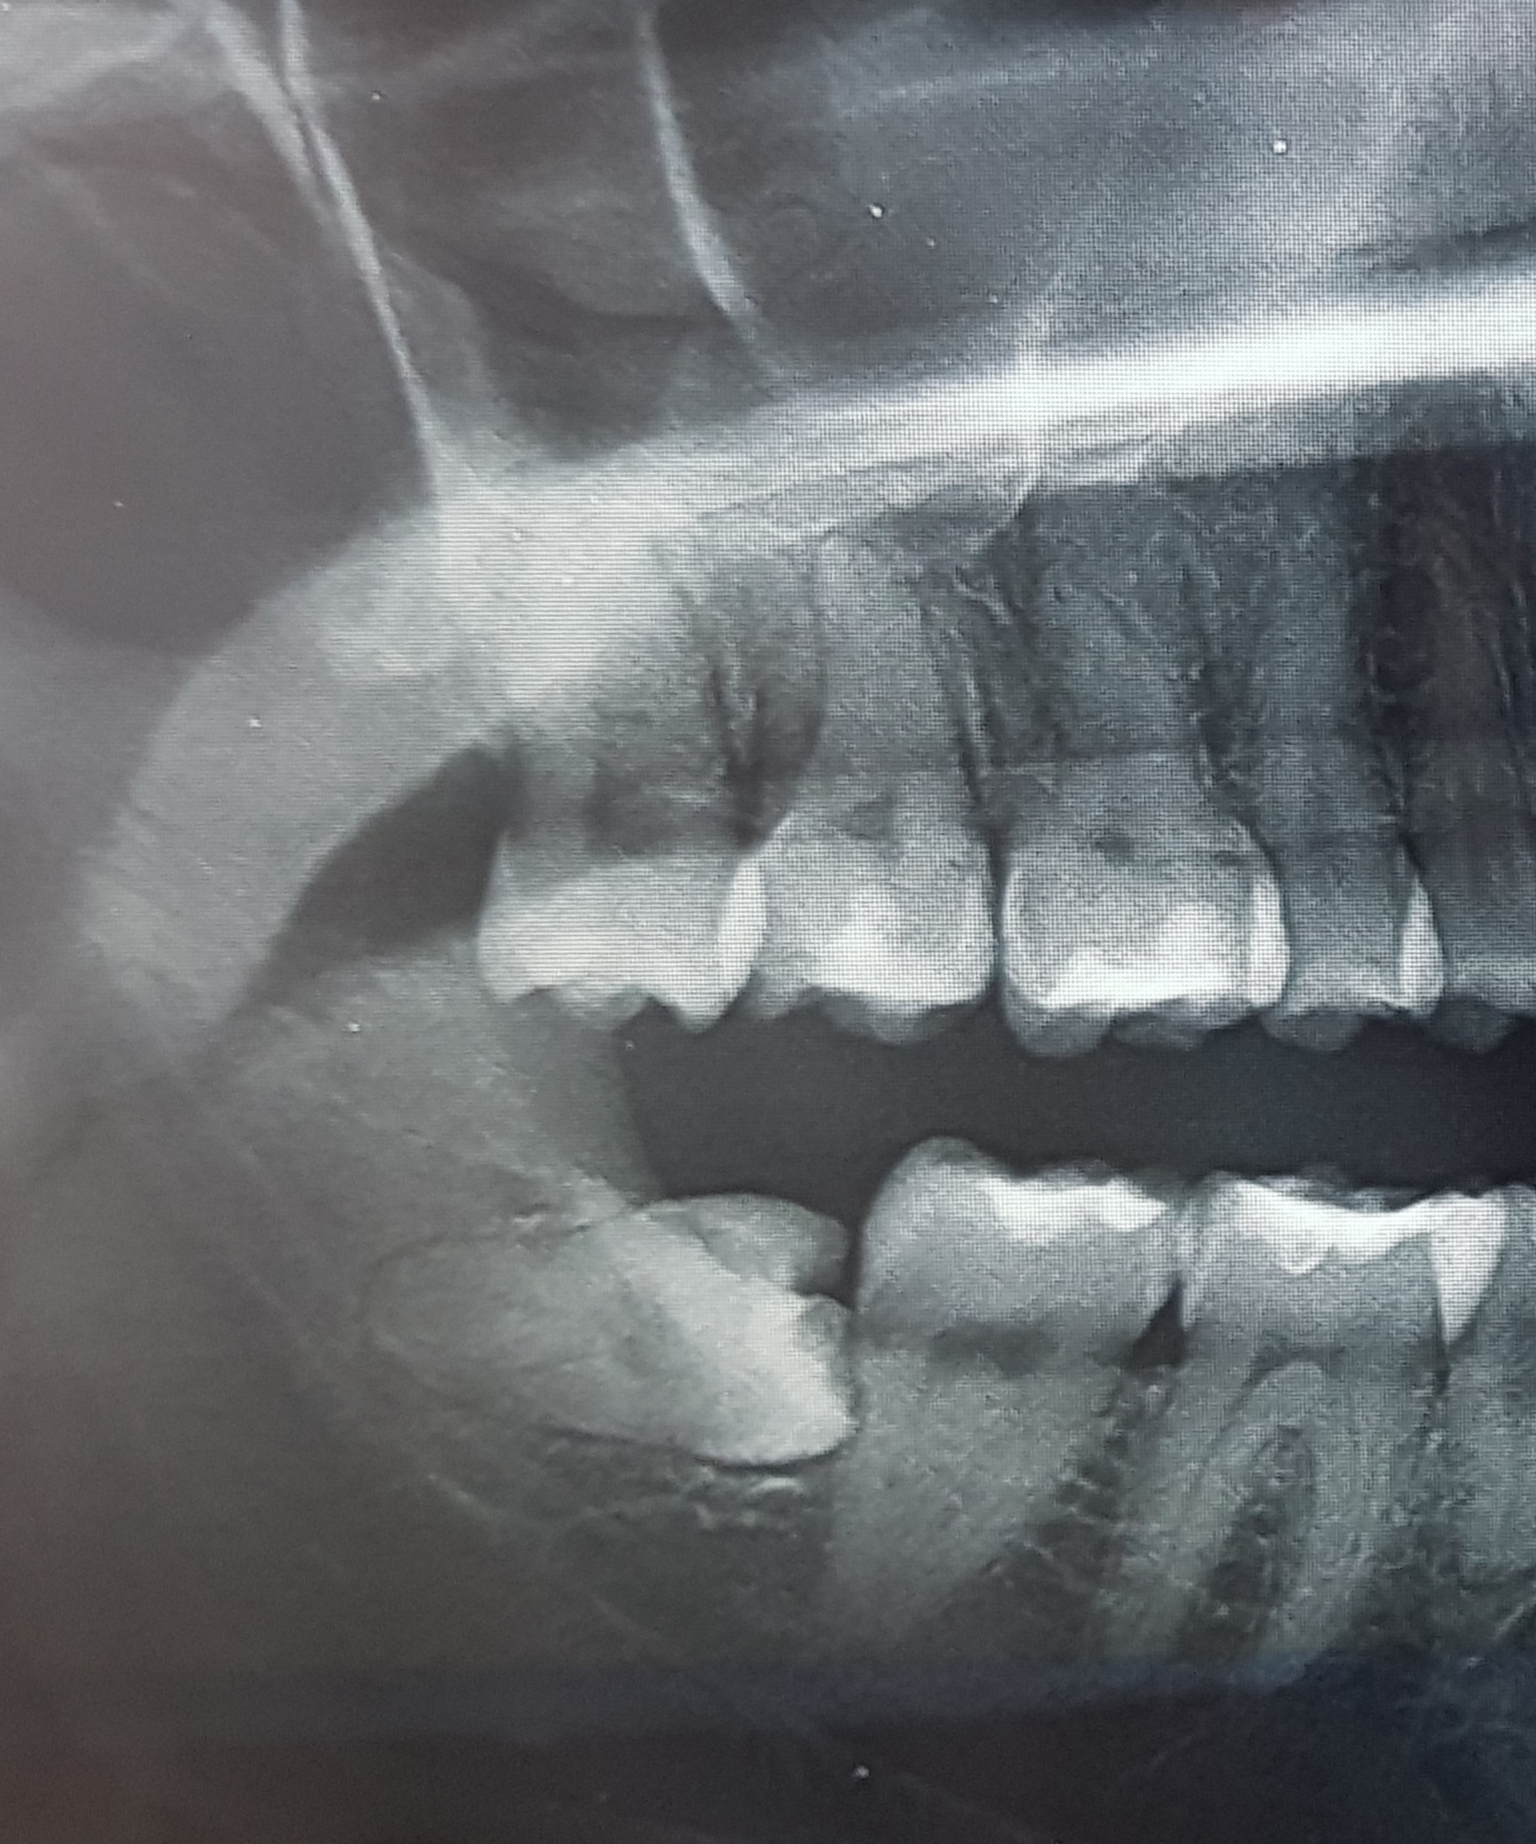 Il dente è da estrarre il prima possibile oppure si può ancora aspettare?